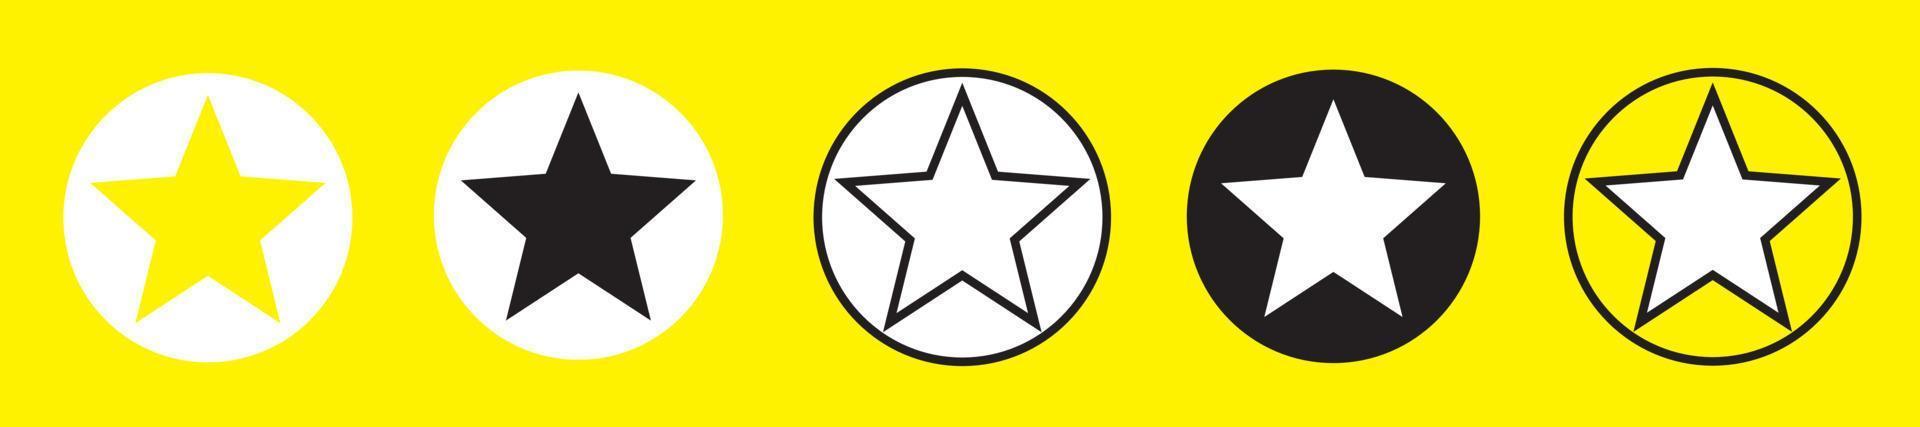 ícone de estrelas douradas. forma de estrelas amarelas brilhantes. ilustração vetorial em fundo branco vetor